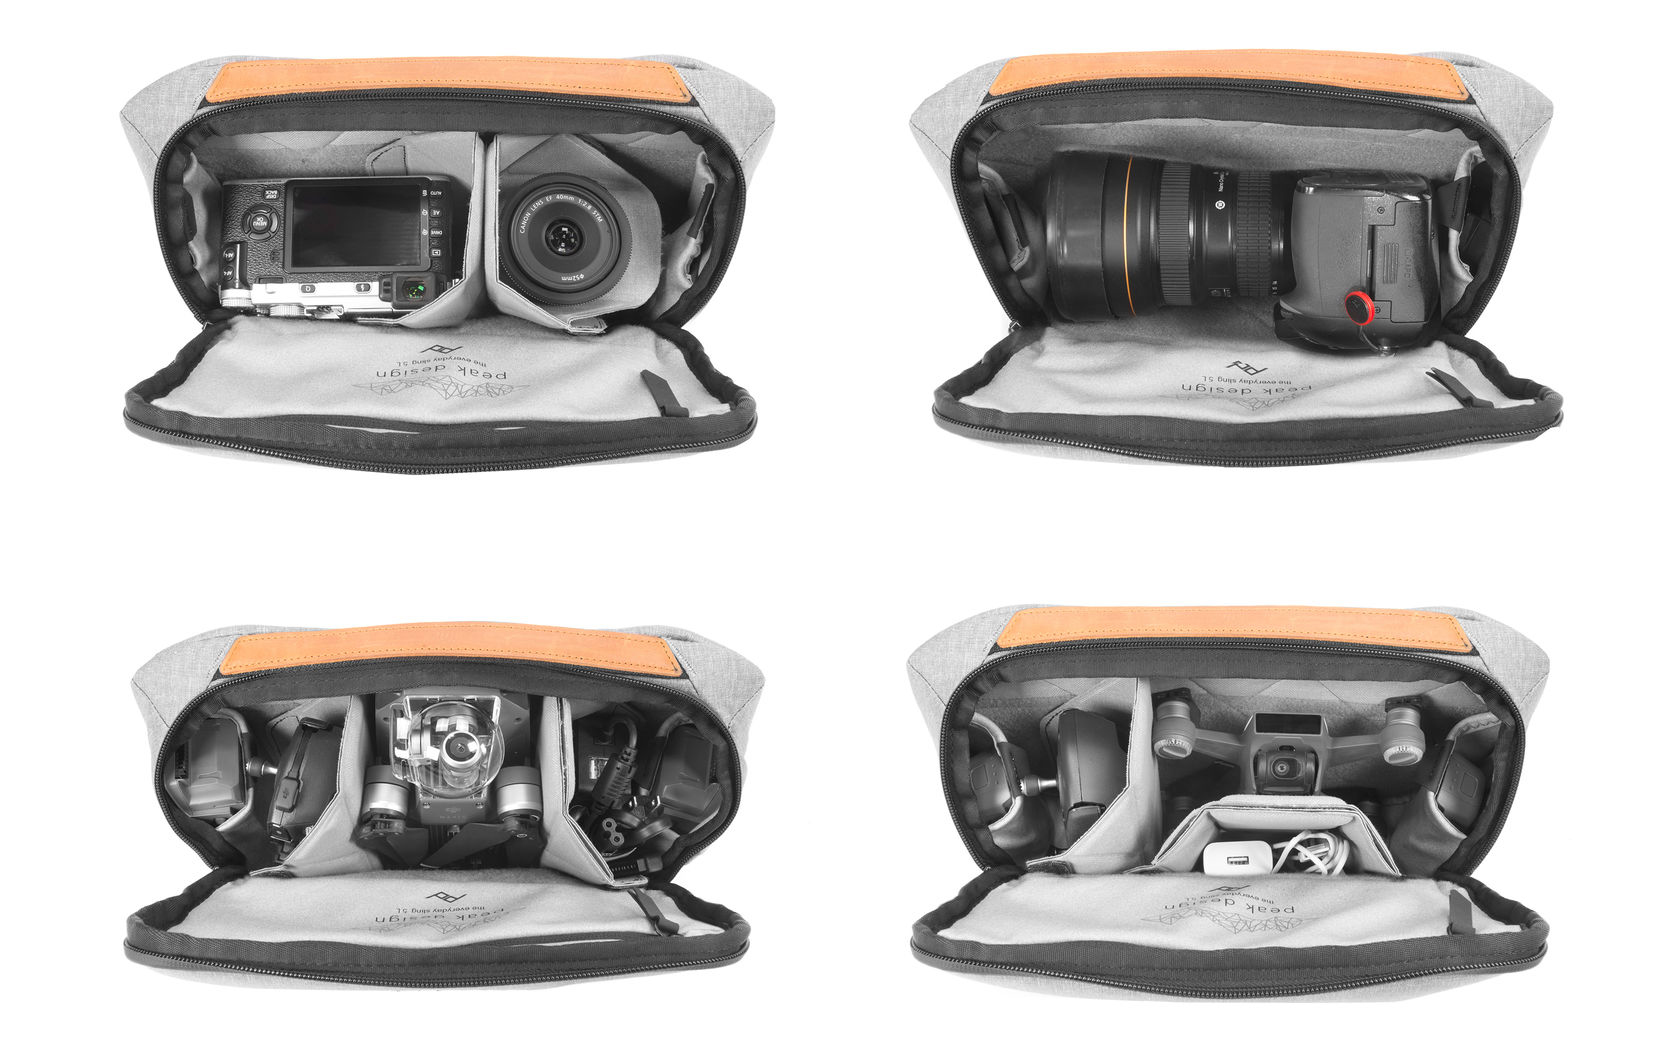 ซื้อ กระเป๋ากล้อง Peak Design Camera Bag Everyday Sling 5L Ash, กระเป๋าใส่กล้องทุกชนิด, กระเป๋ากล้อง mirrorless, กระเป๋ากล้อง backpack, กระเป๋ากล้อง nikon, กระเป๋ากล้อง canon, กระเป๋ากล้องสะพายข้าง, กระเป๋ากล้องราคาถูก, กระเป๋ากล้อง herringbone ,กระเป๋ากล้อง fuji, กระเป๋ากล้องน้ำหนักเบา, กระเป๋ากล้องกันกระแทก, กระกระเป๋ากล้องแบร์นดัง ราคาพิเศษ พร้อมโปรโมชั่นลดราคา ส่งฟรี ส่งเร็ว ทั่วไทย  